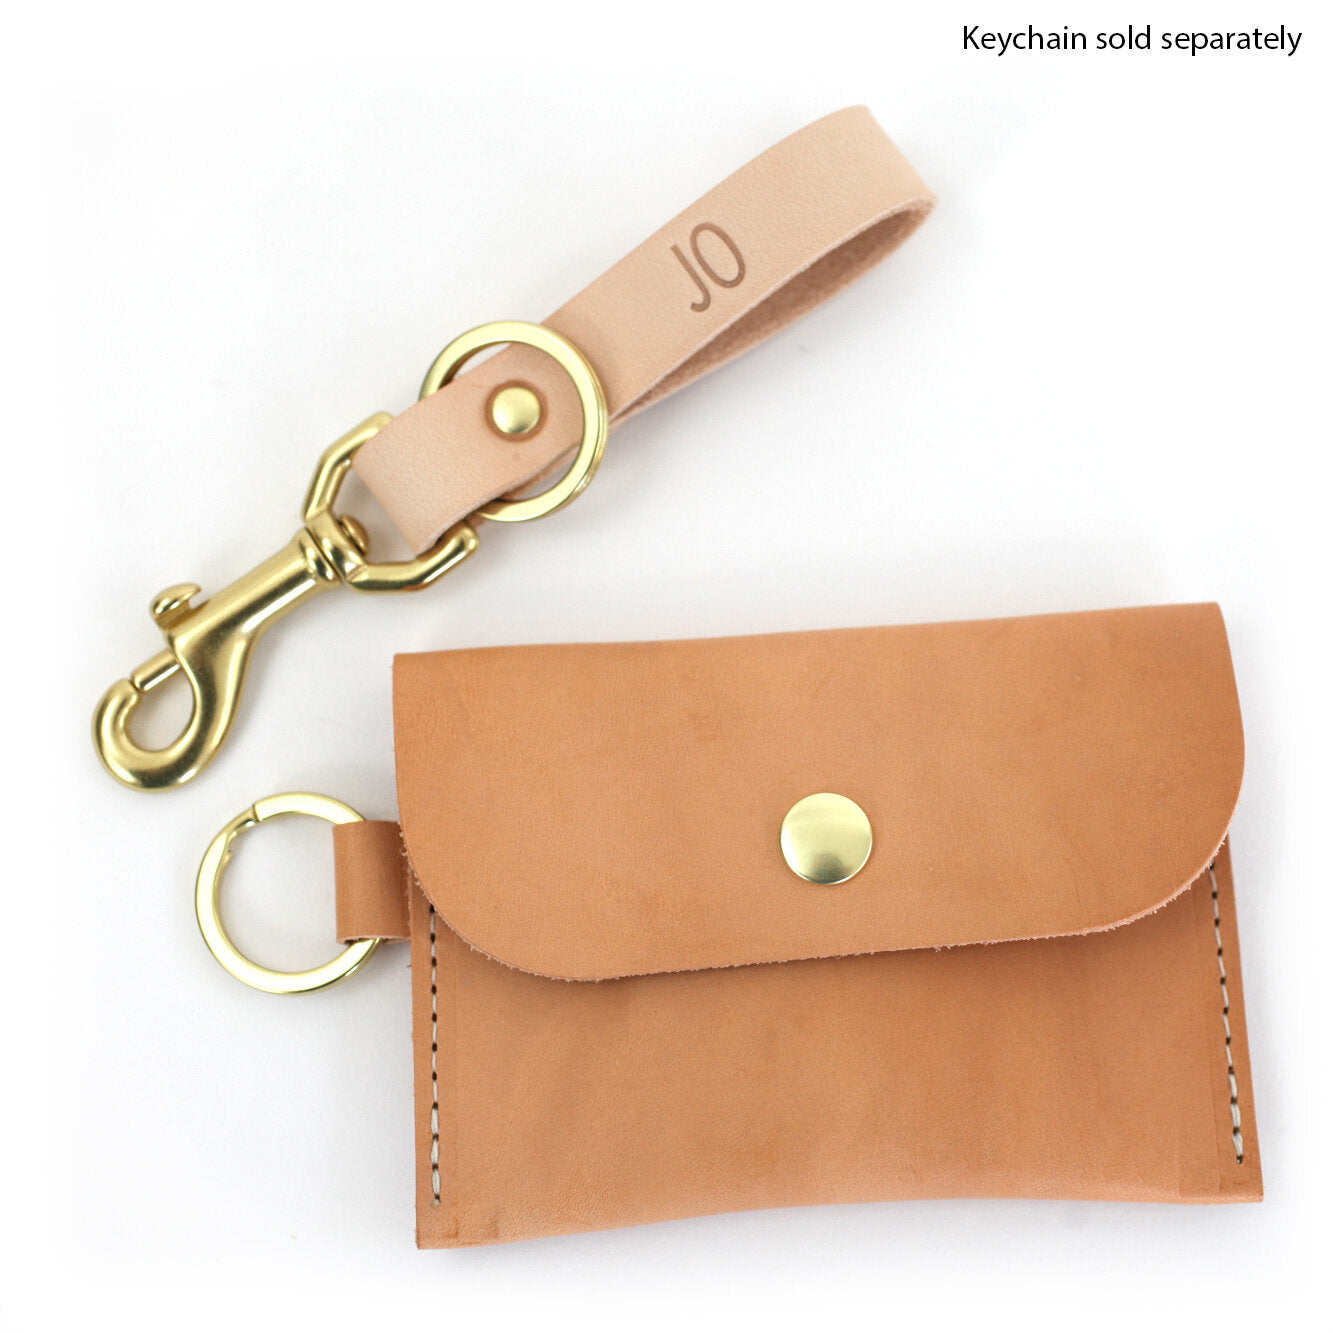 Vegan Leather Wallet Key Chain • Claudette